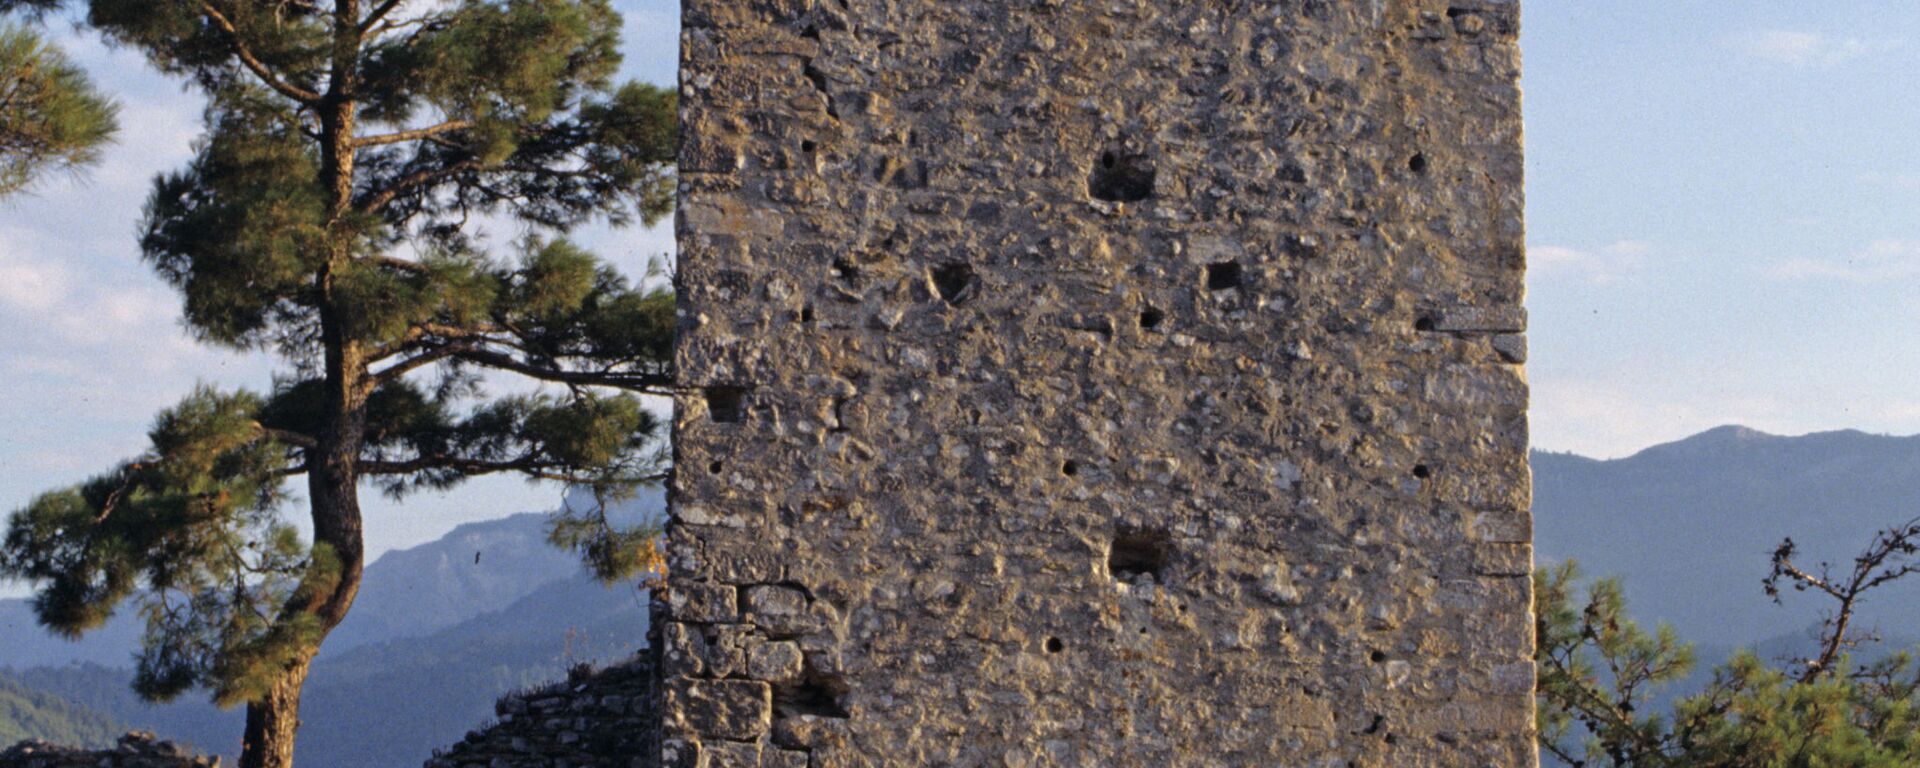 Развалины старинного замка на острове Тассос. - Sputnik Армения, 1920, 19.06.2021